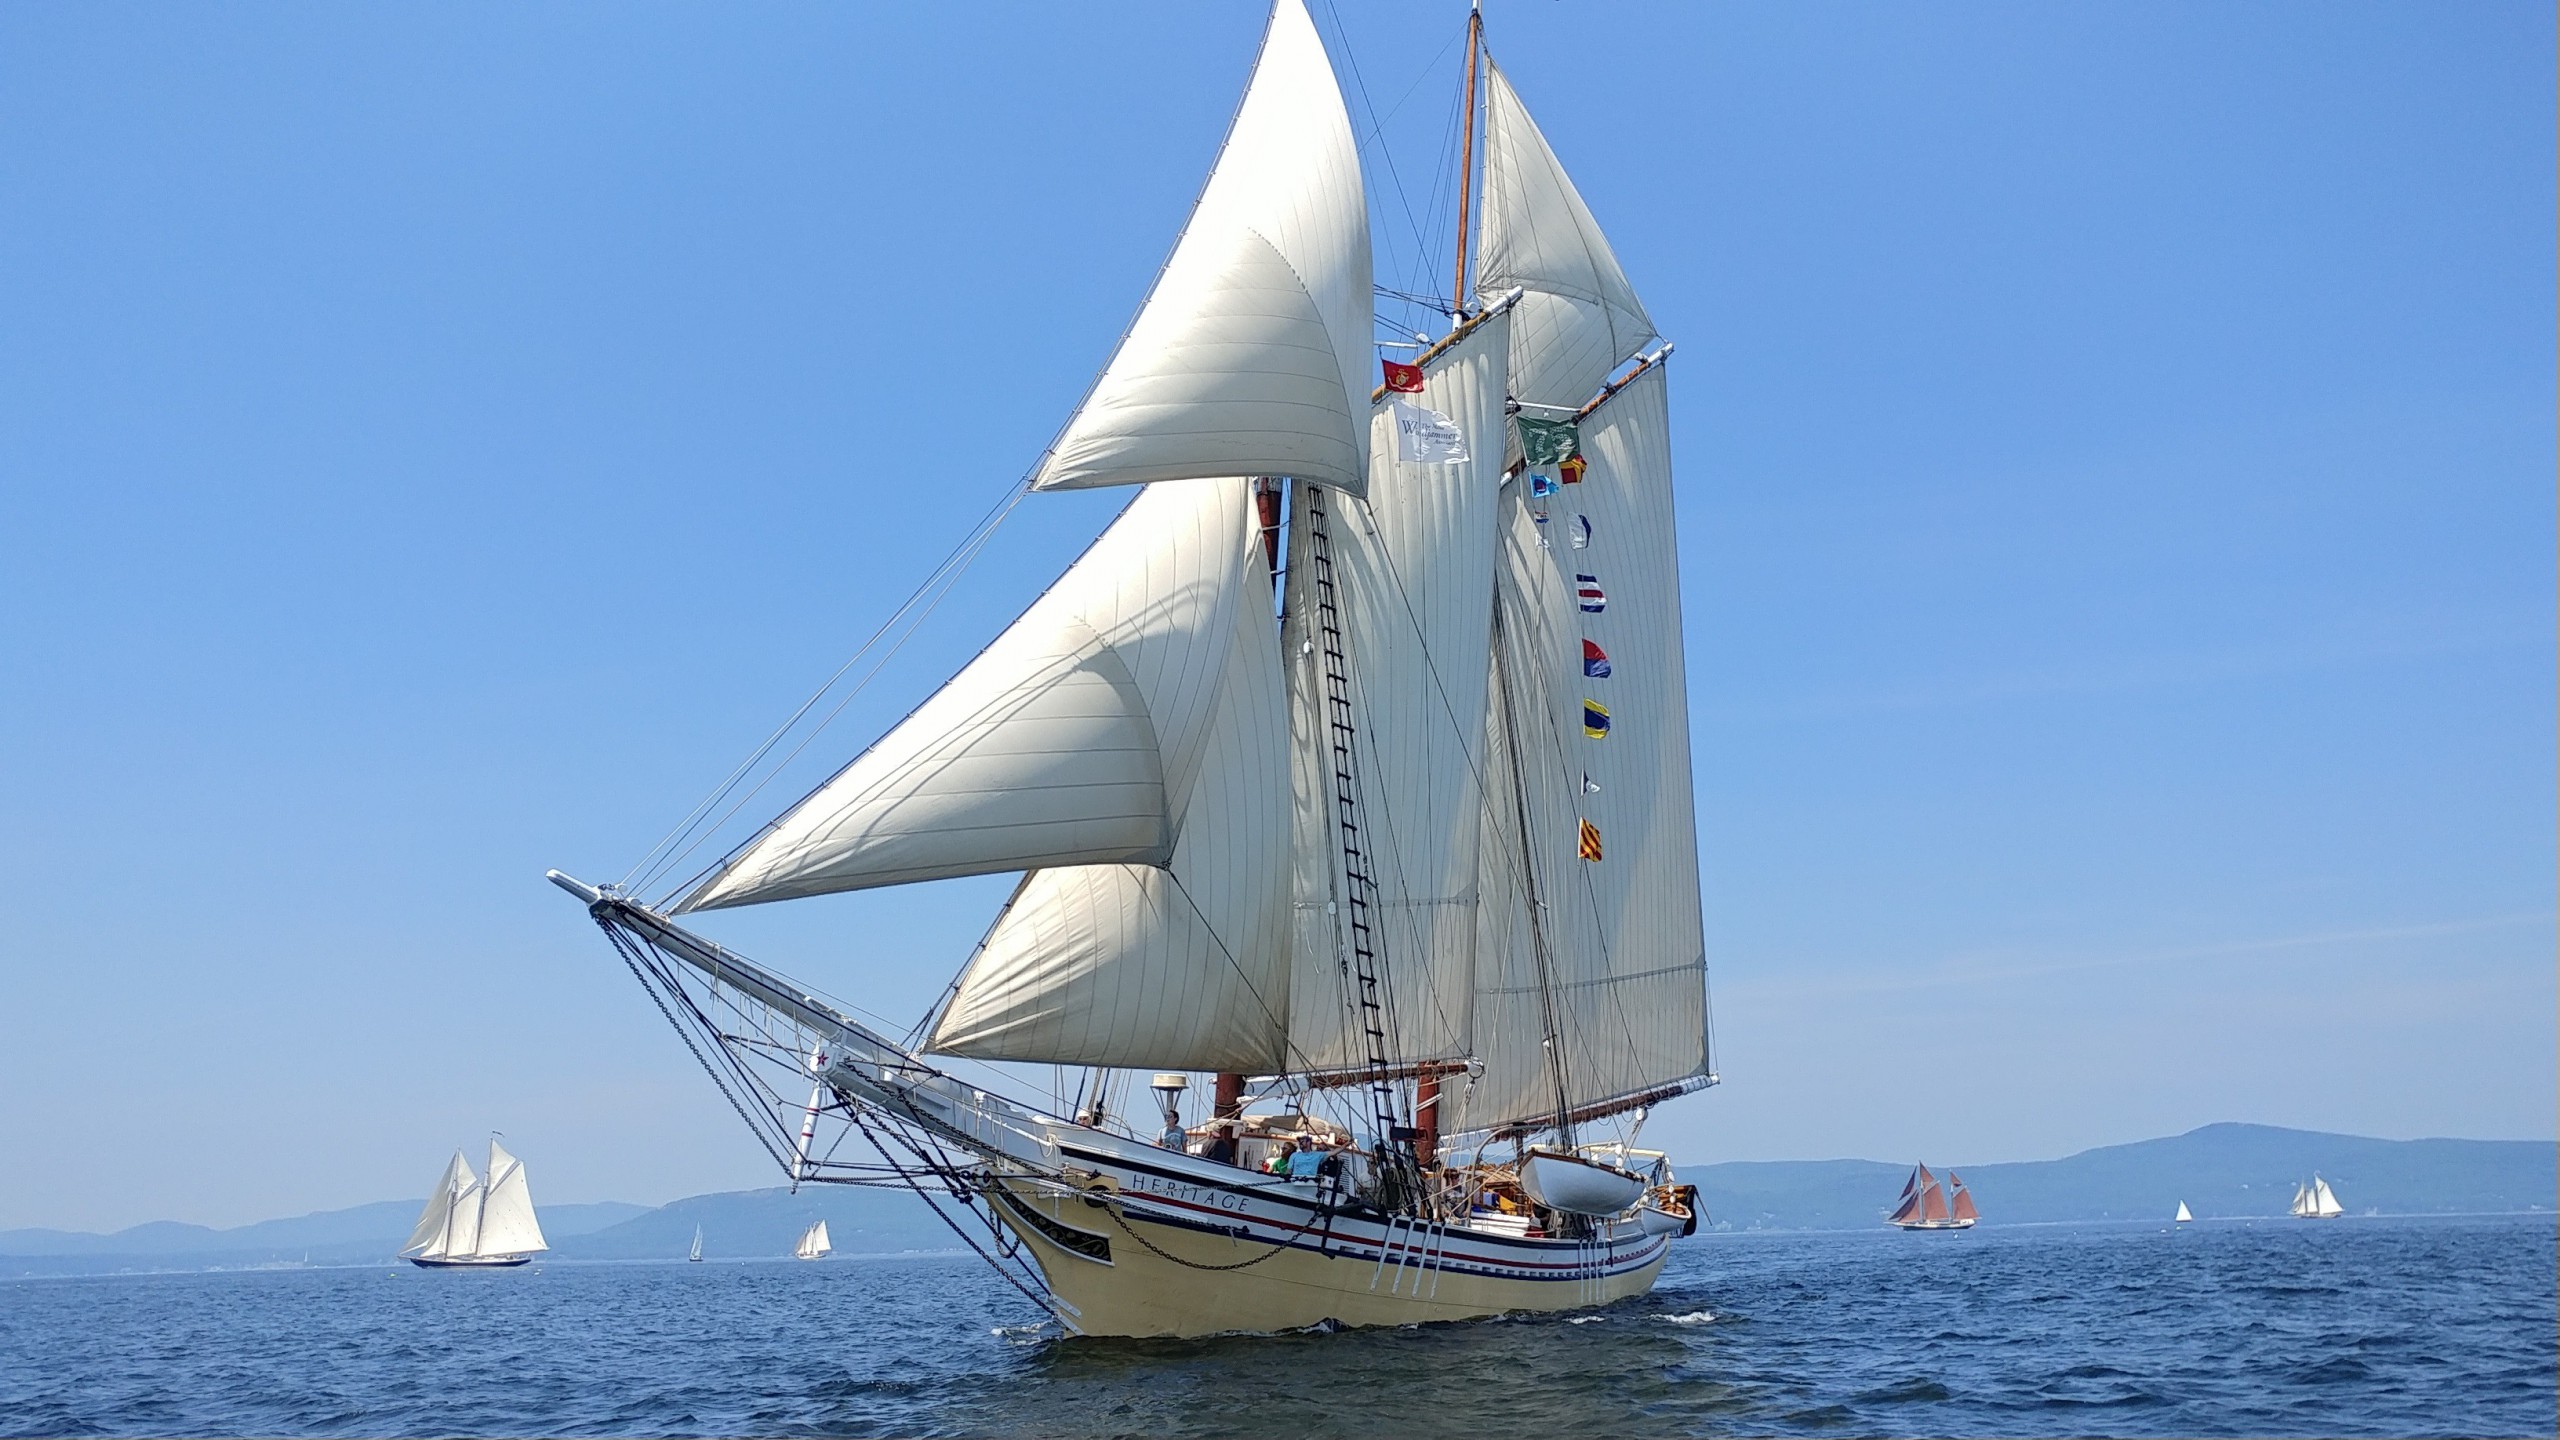 Schooner Heritage sailing in the 43rd Annual Great Schooner Race